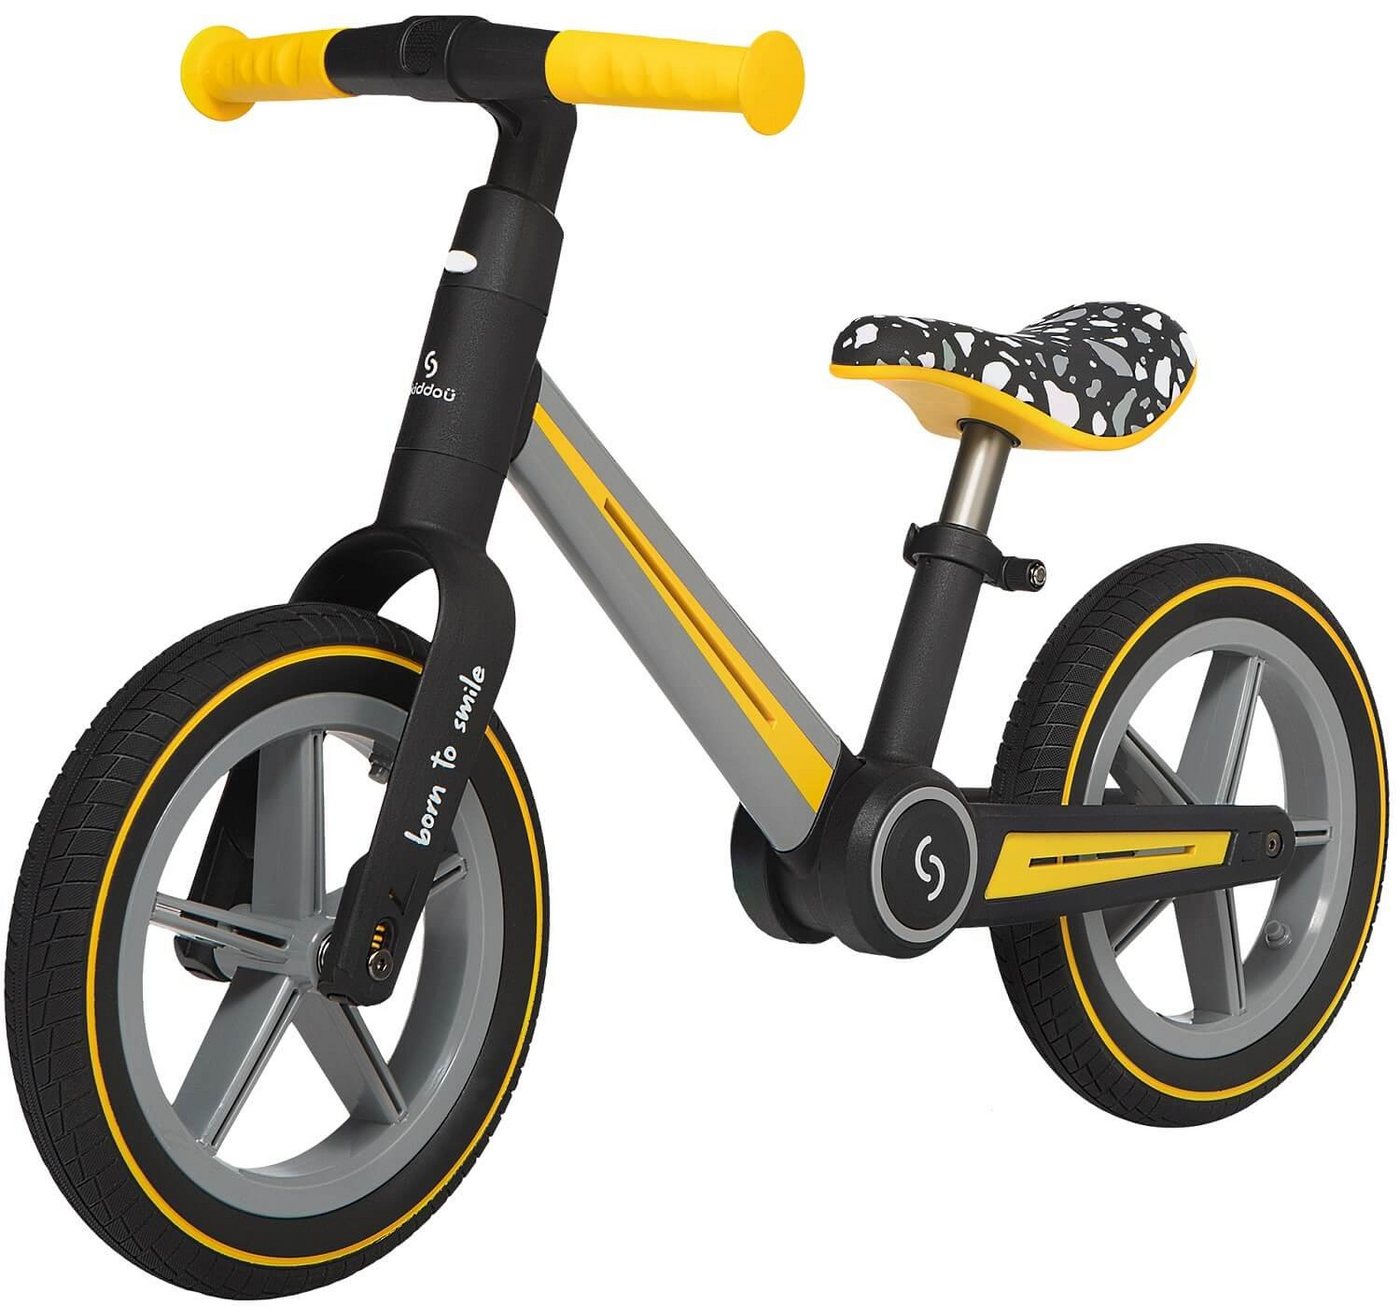 Skiddoü Laufrad Ronny faltbares Laufrad für Kinder bis 30 kg verstellbar in 3 Farben 12 Zoll, inkl. Malbuch von Skiddoü